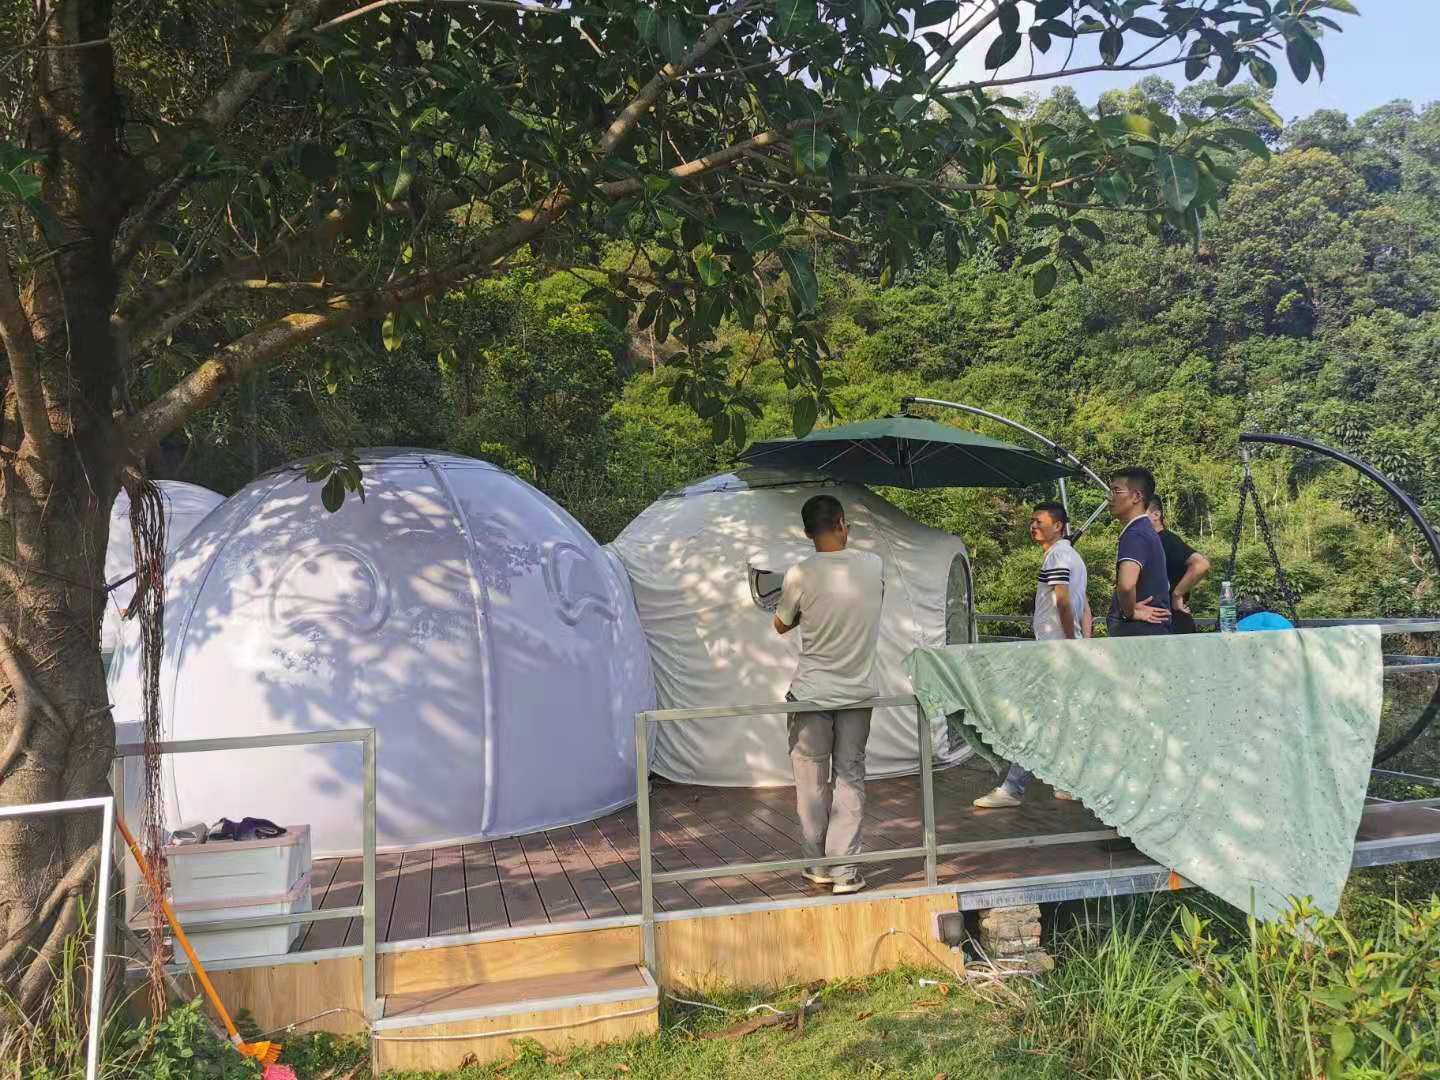 充气房子透明帐篷户外充气露营帐篷泡泡屋防雨防风防蚊虫野营帐篷